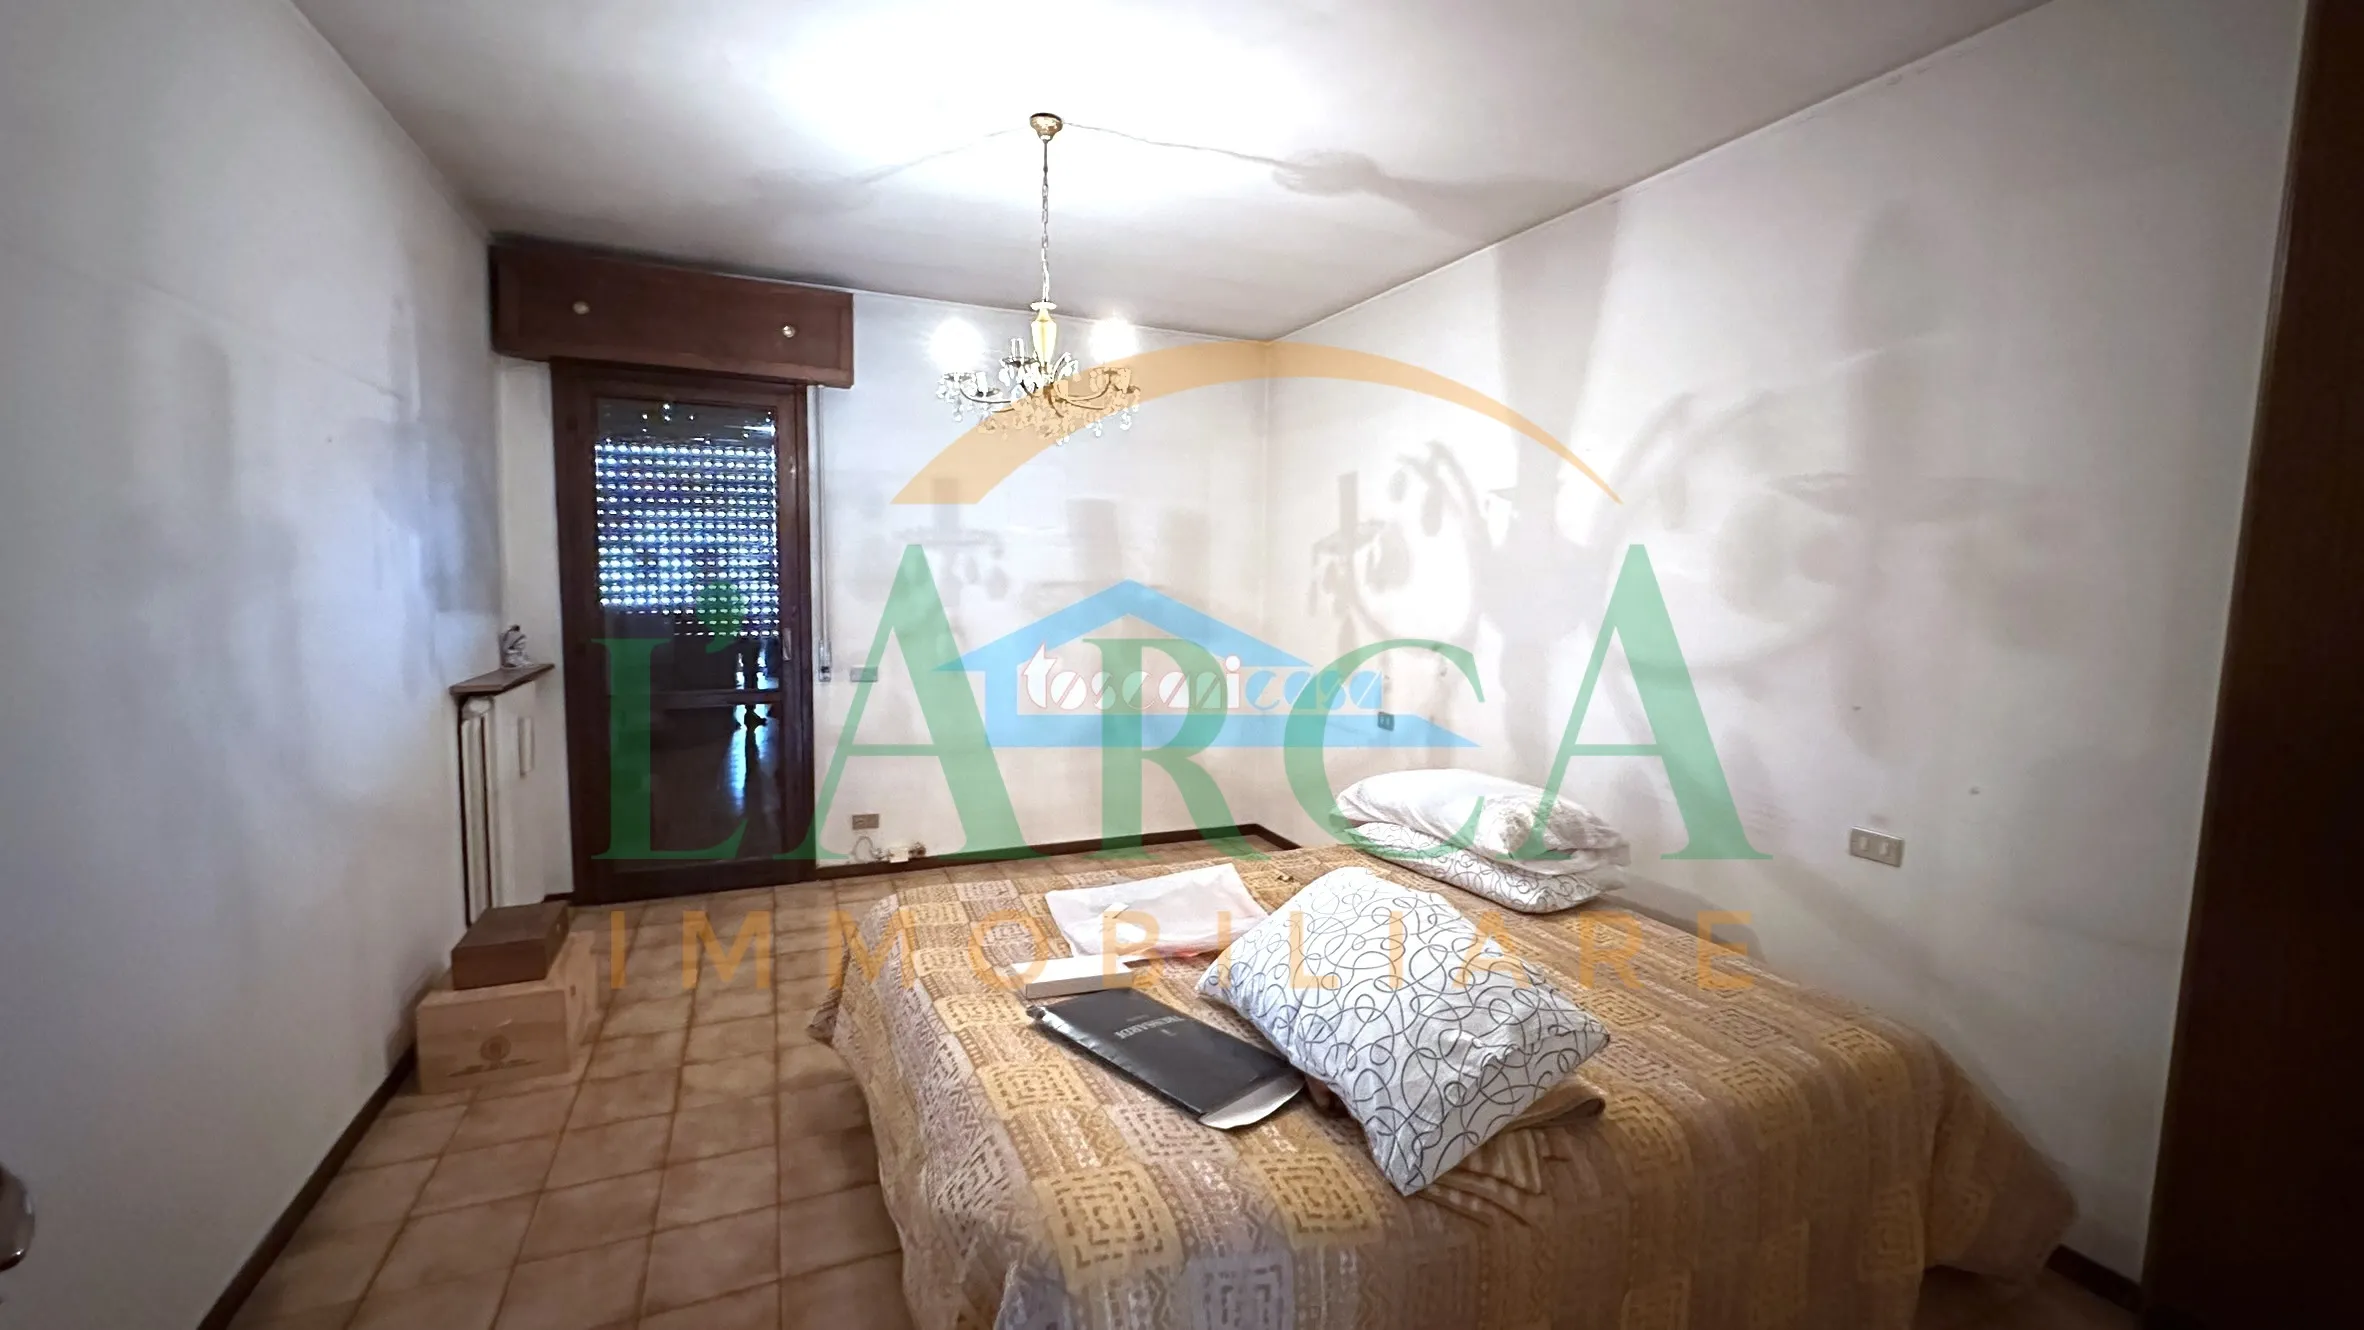 Immagine per Villa a schiera in vendita a Capriolo via Quadri  Seconda  Traversa 26